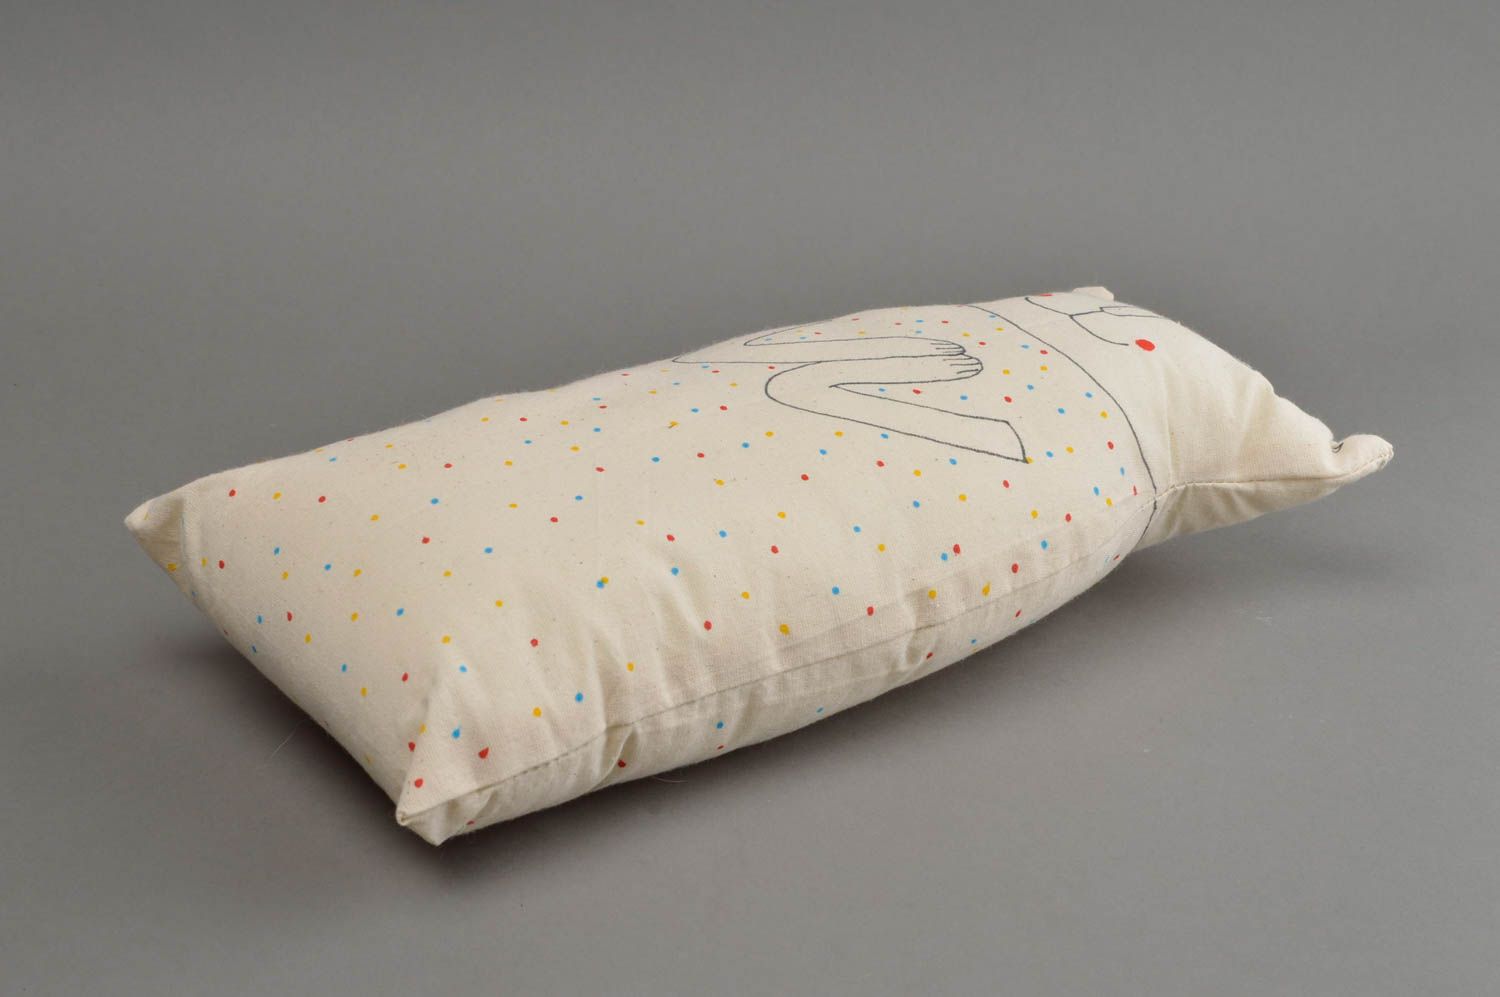 Хлопчатобумажная подушка в виде кота расписная белая красивая хэнд мэйд фото 4